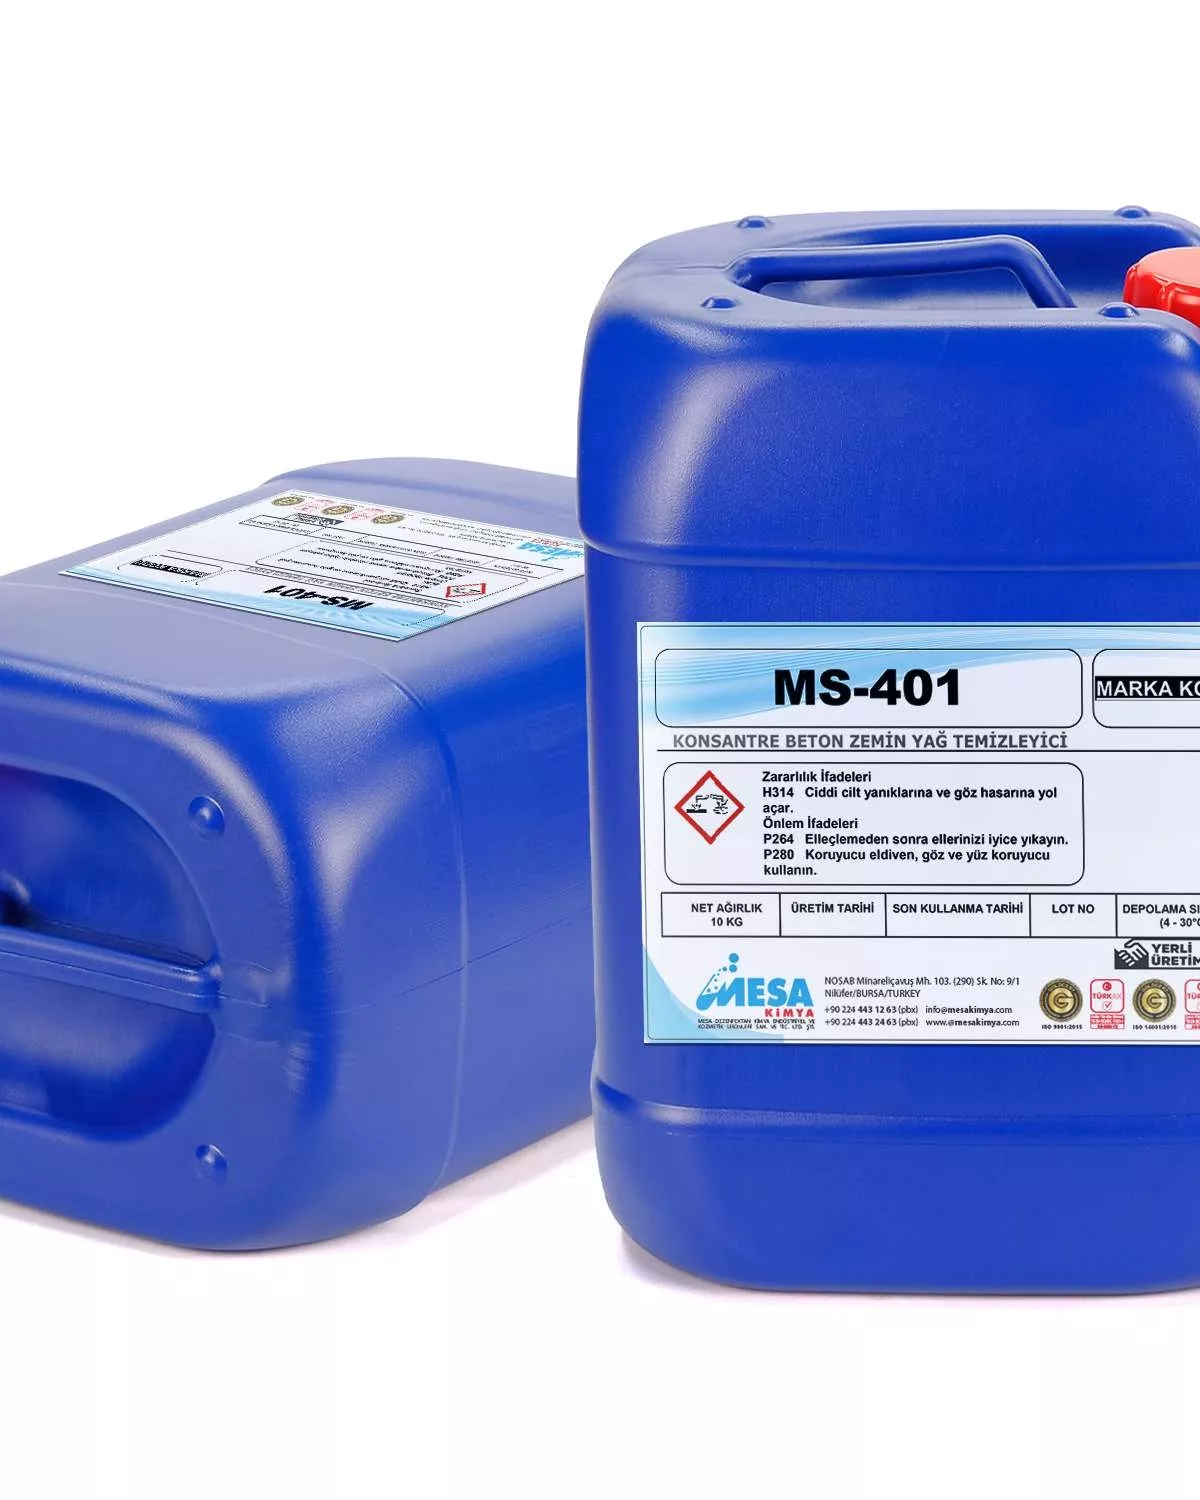 Beton zemin yağ temizleyici MS-401